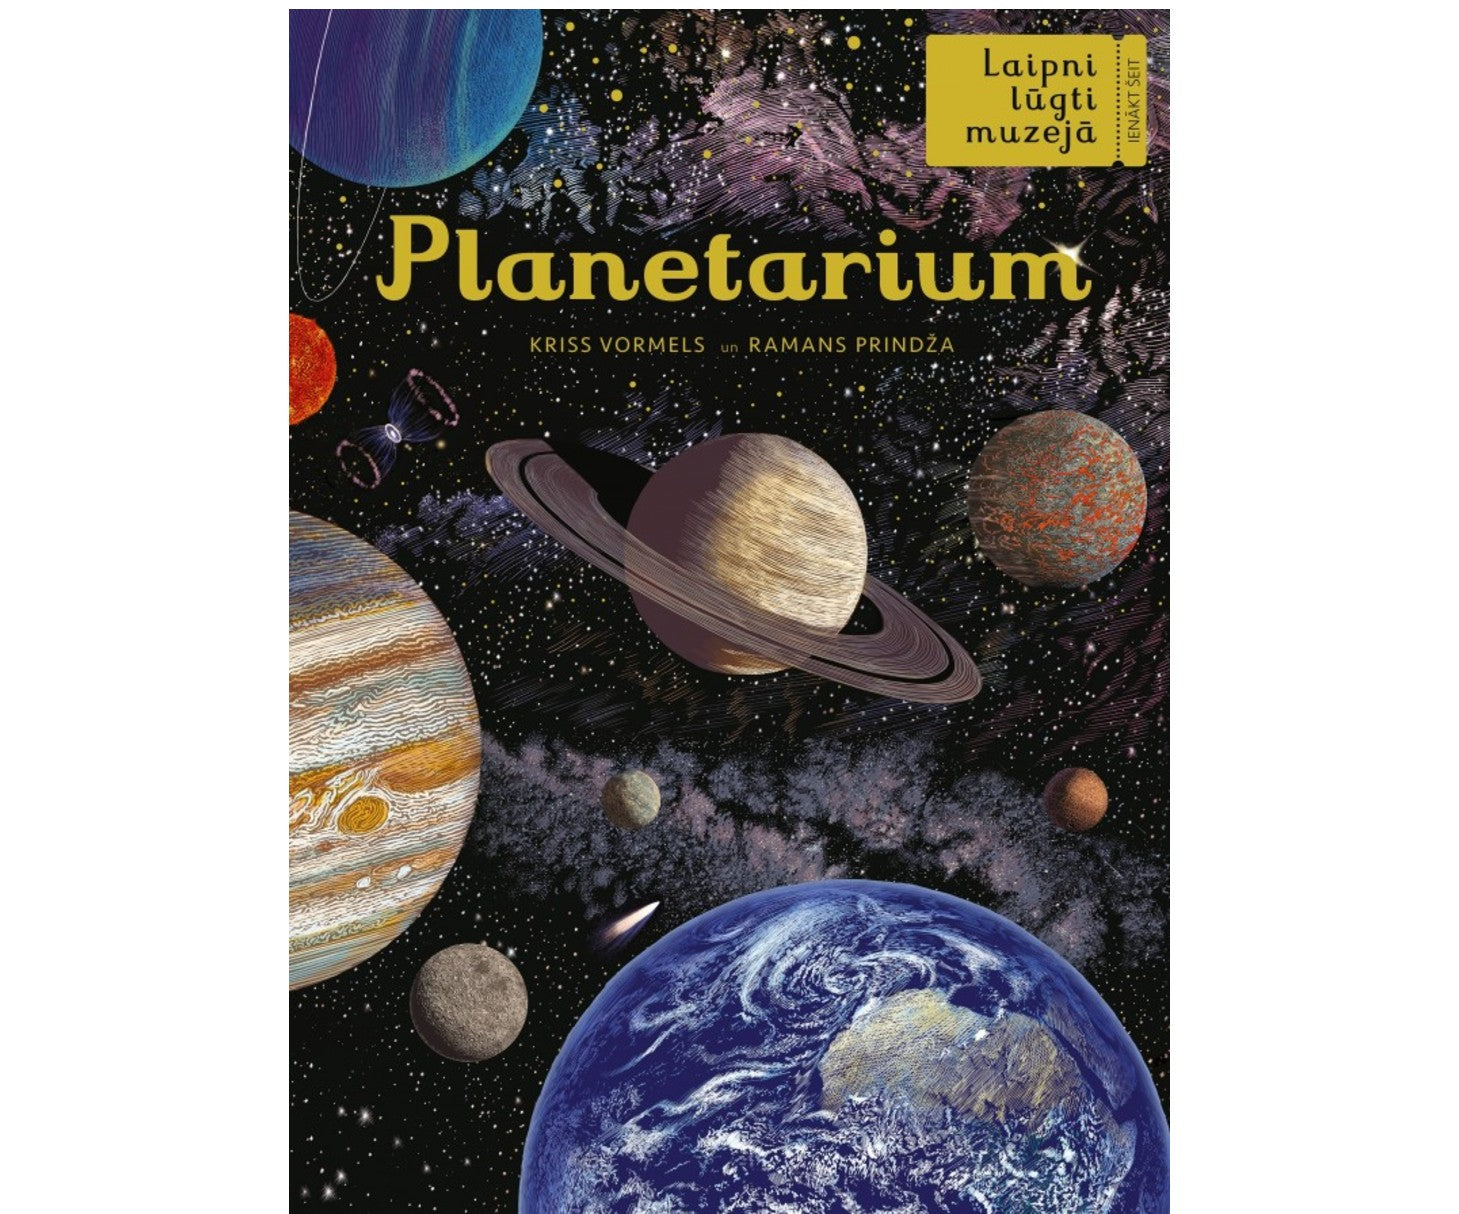 Lielā grāmata - Laipni lūgti muzejā. Planetarium